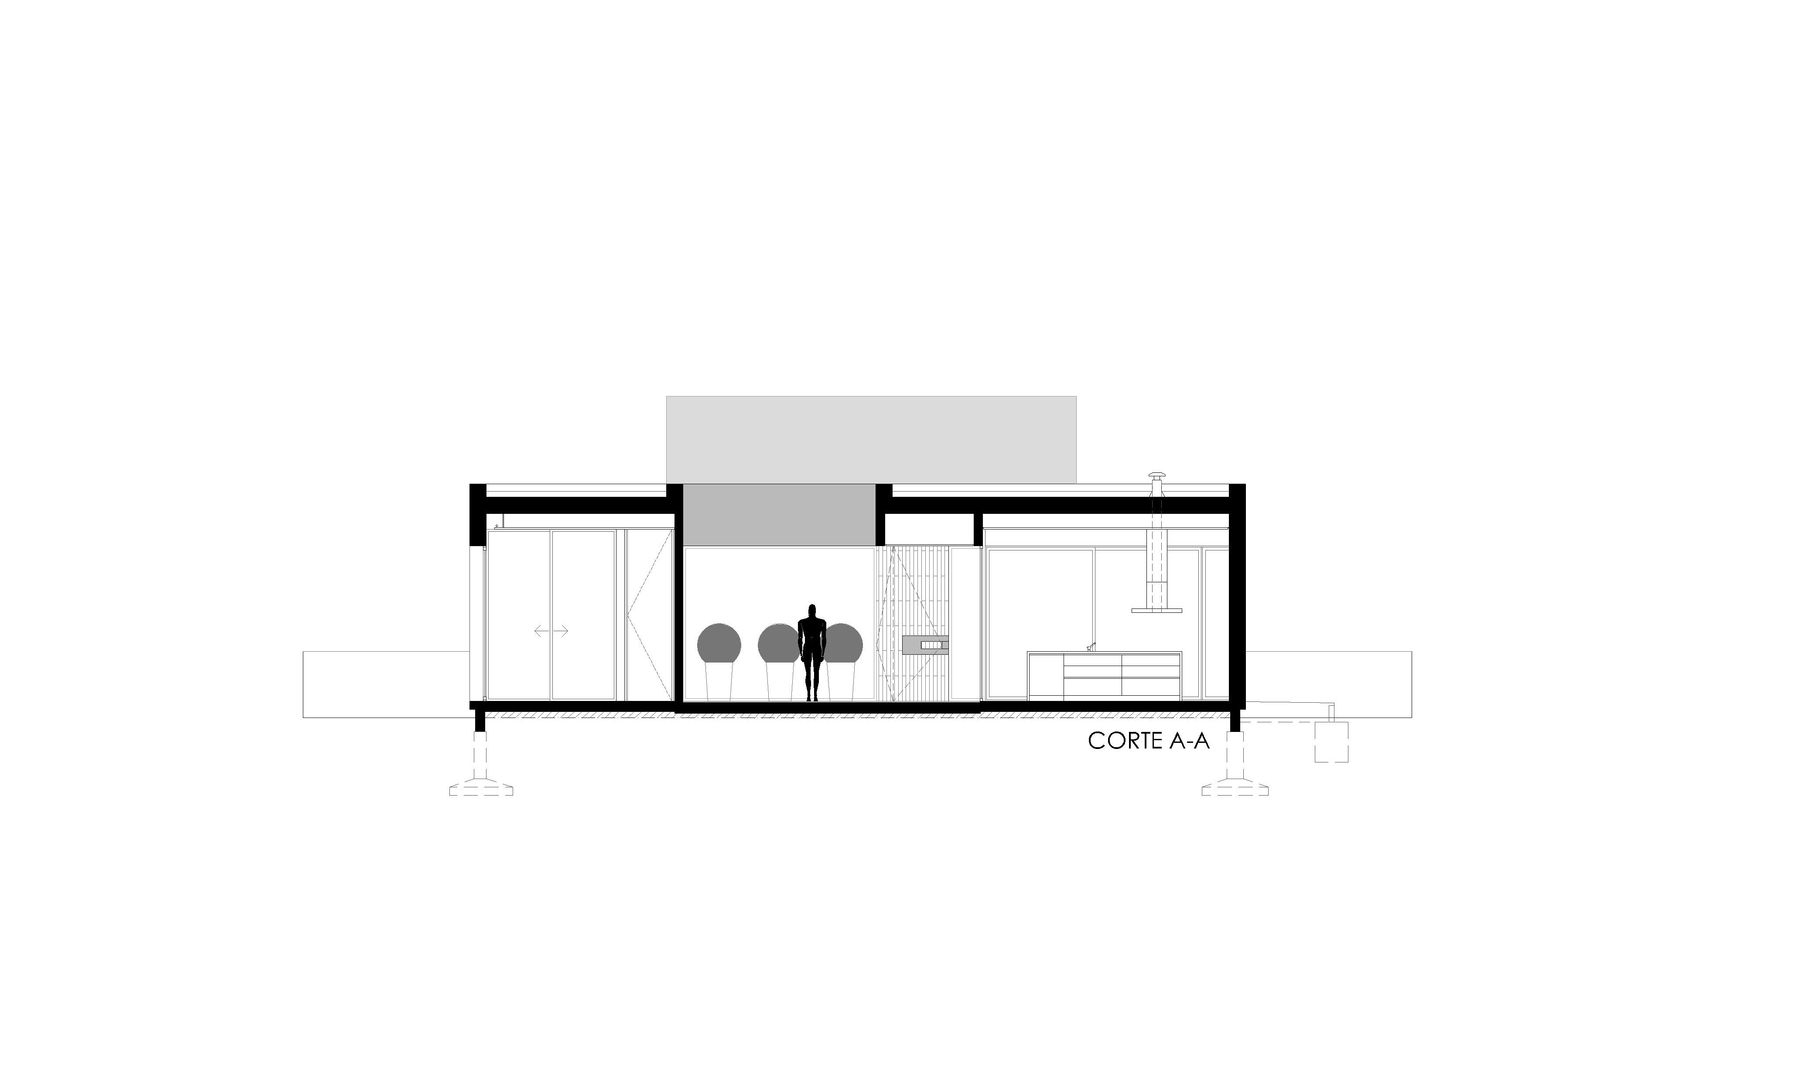 CORTE AA VISMARACORSI ARQUITECTOS Casas de estilo minimalista